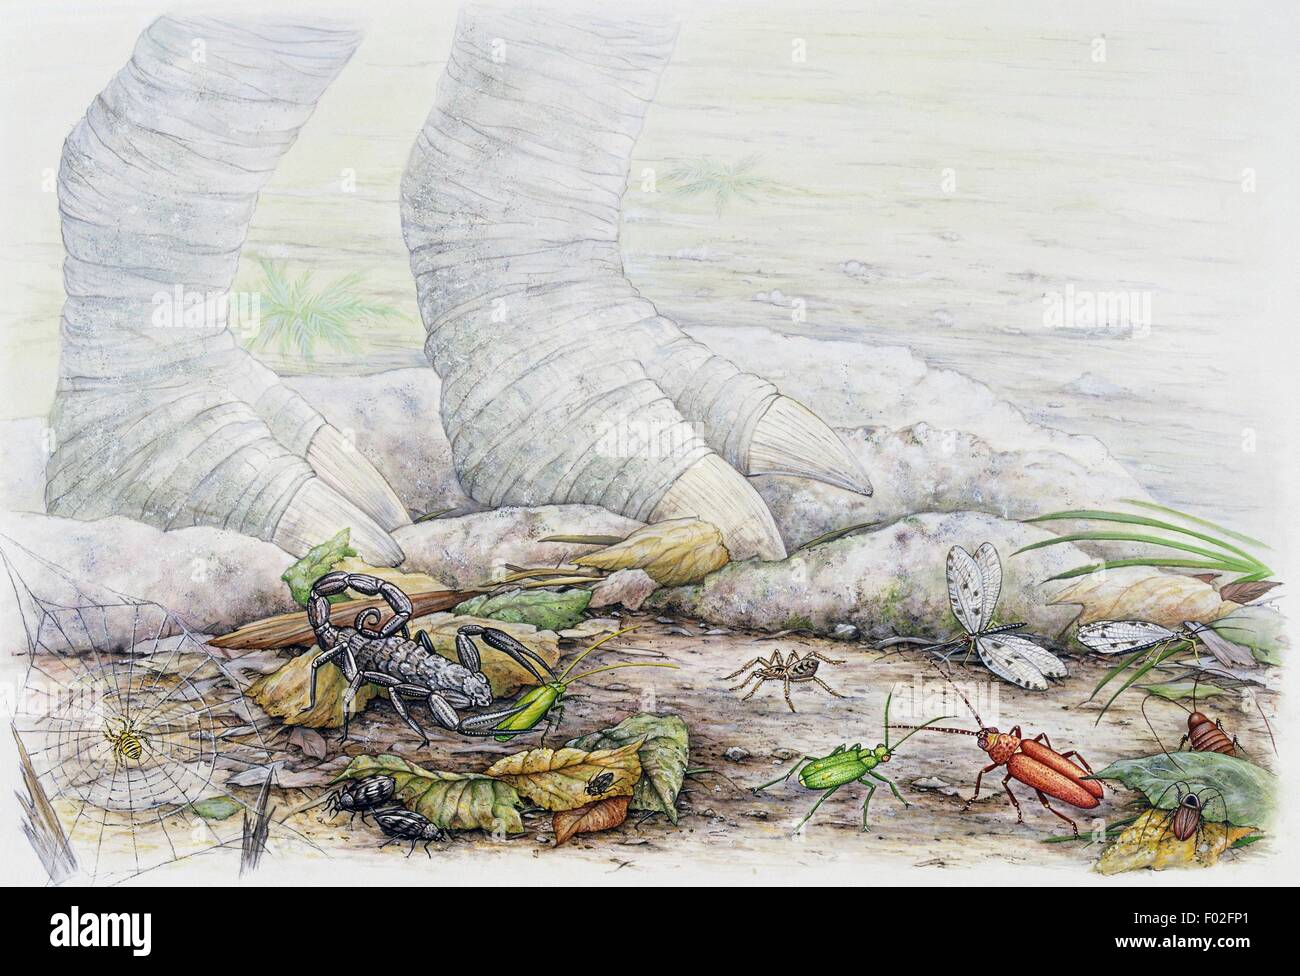 De gauche à droite, l'Orbe-web, les carabes, araignées, scorpions, cafards Green Spider de chasse, les libellules, les cafards. Artwork par Angela Hargreaves. Banque D'Images